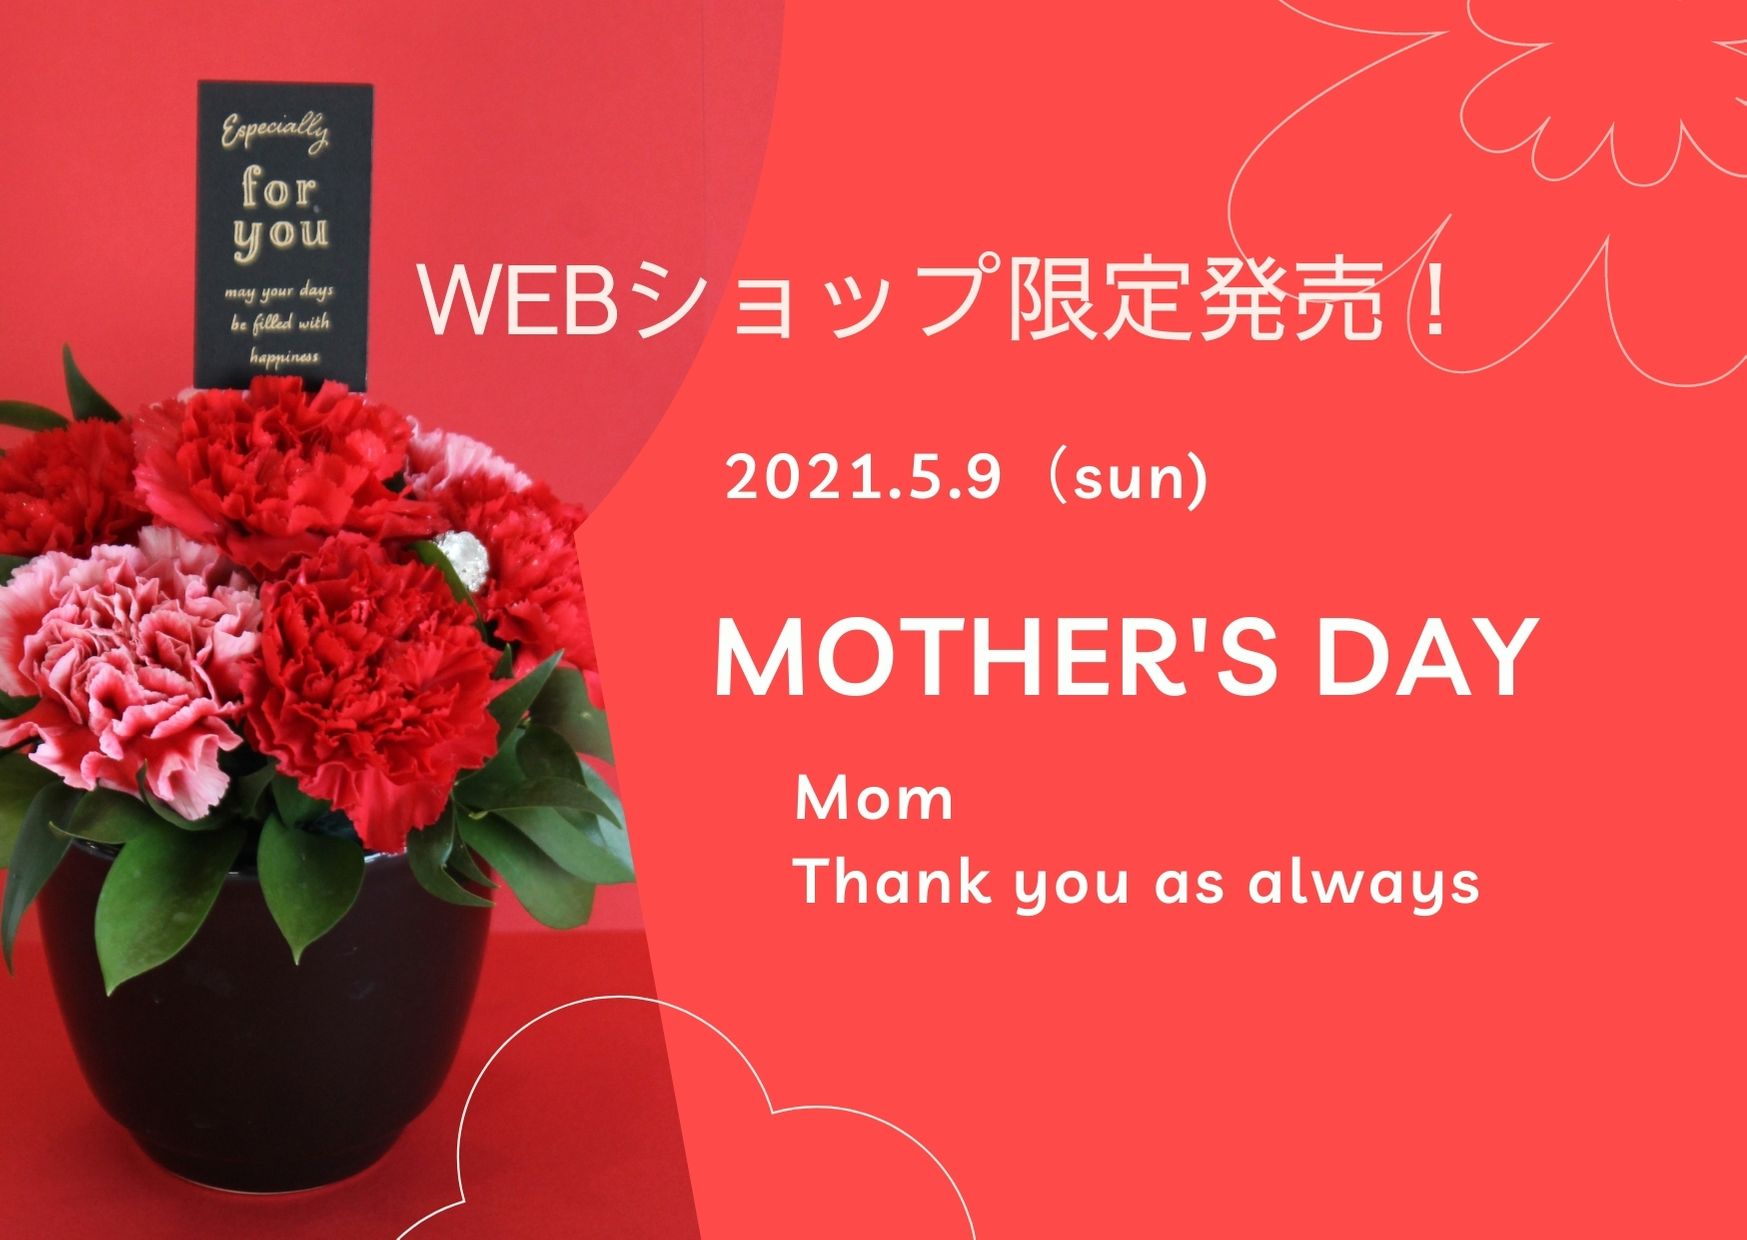 ☆年に一度、感謝の気持ちを込めて贈る母の日のプレゼント☆